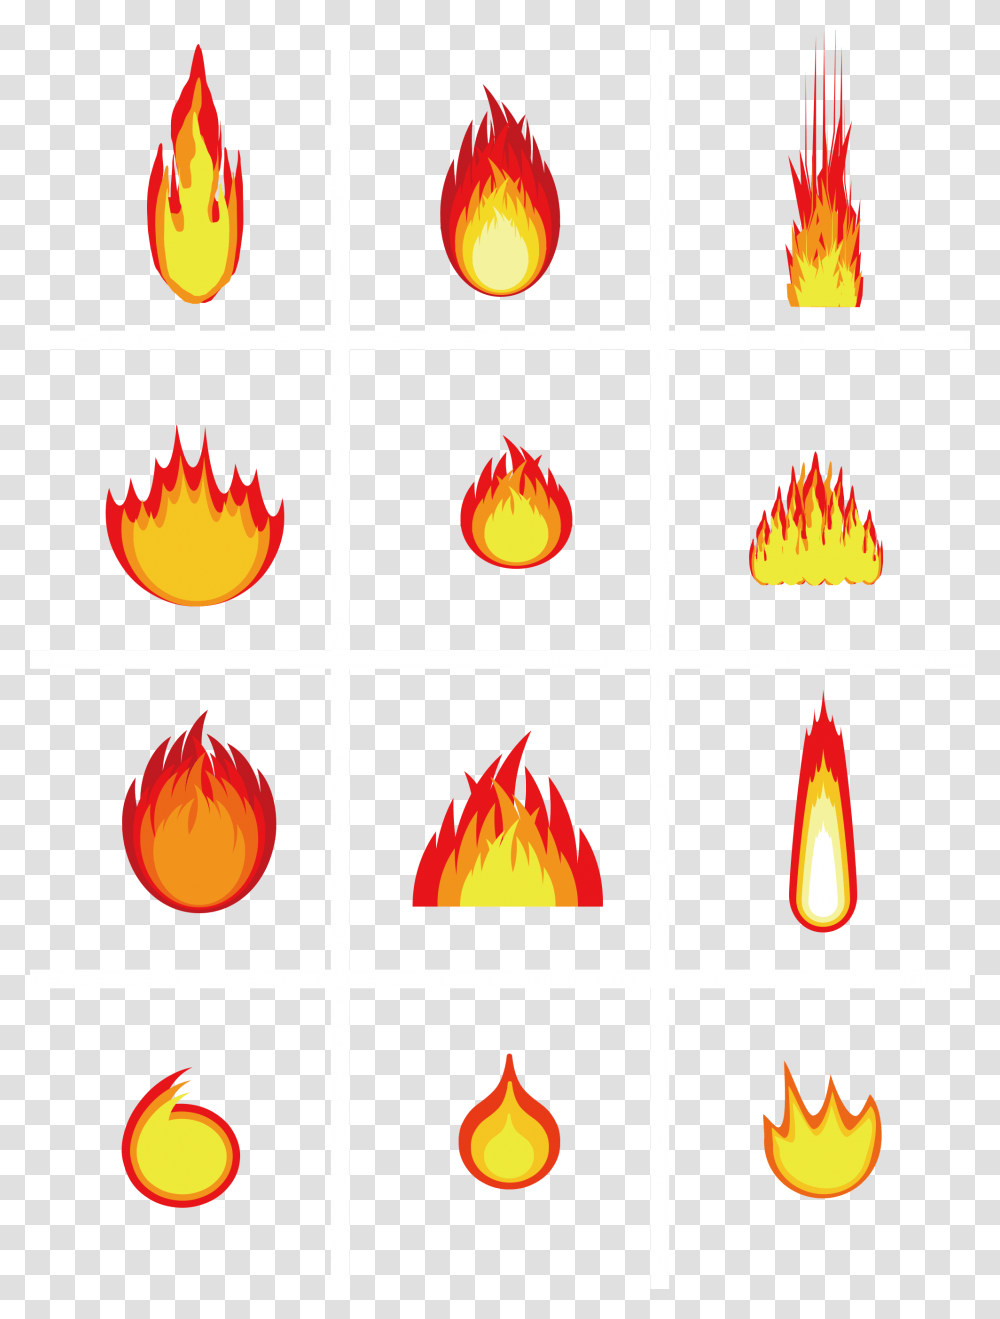 Fire Pillar, Flame, Lantern, Lamp Transparent Png